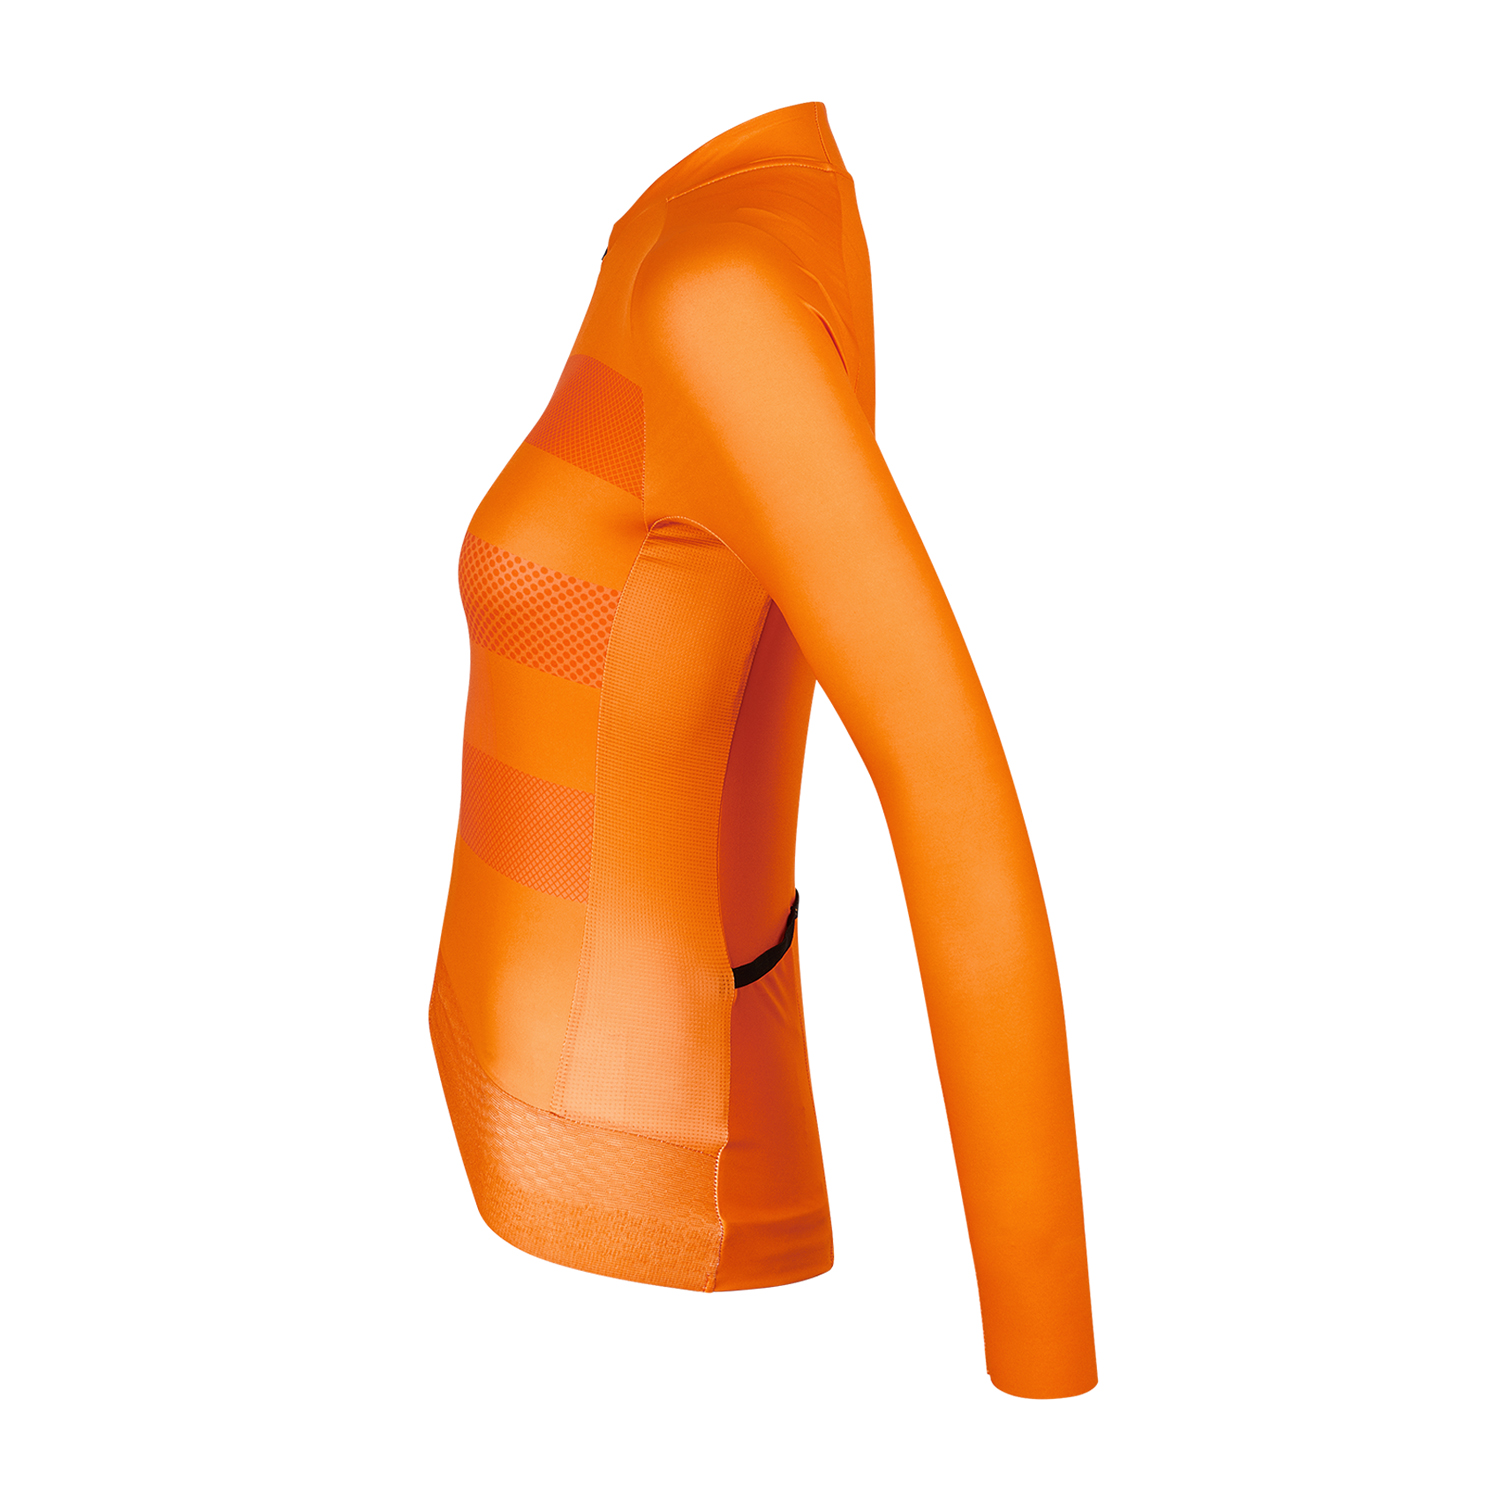 Epic Women's Long Sleeve Jersey Slice Orange